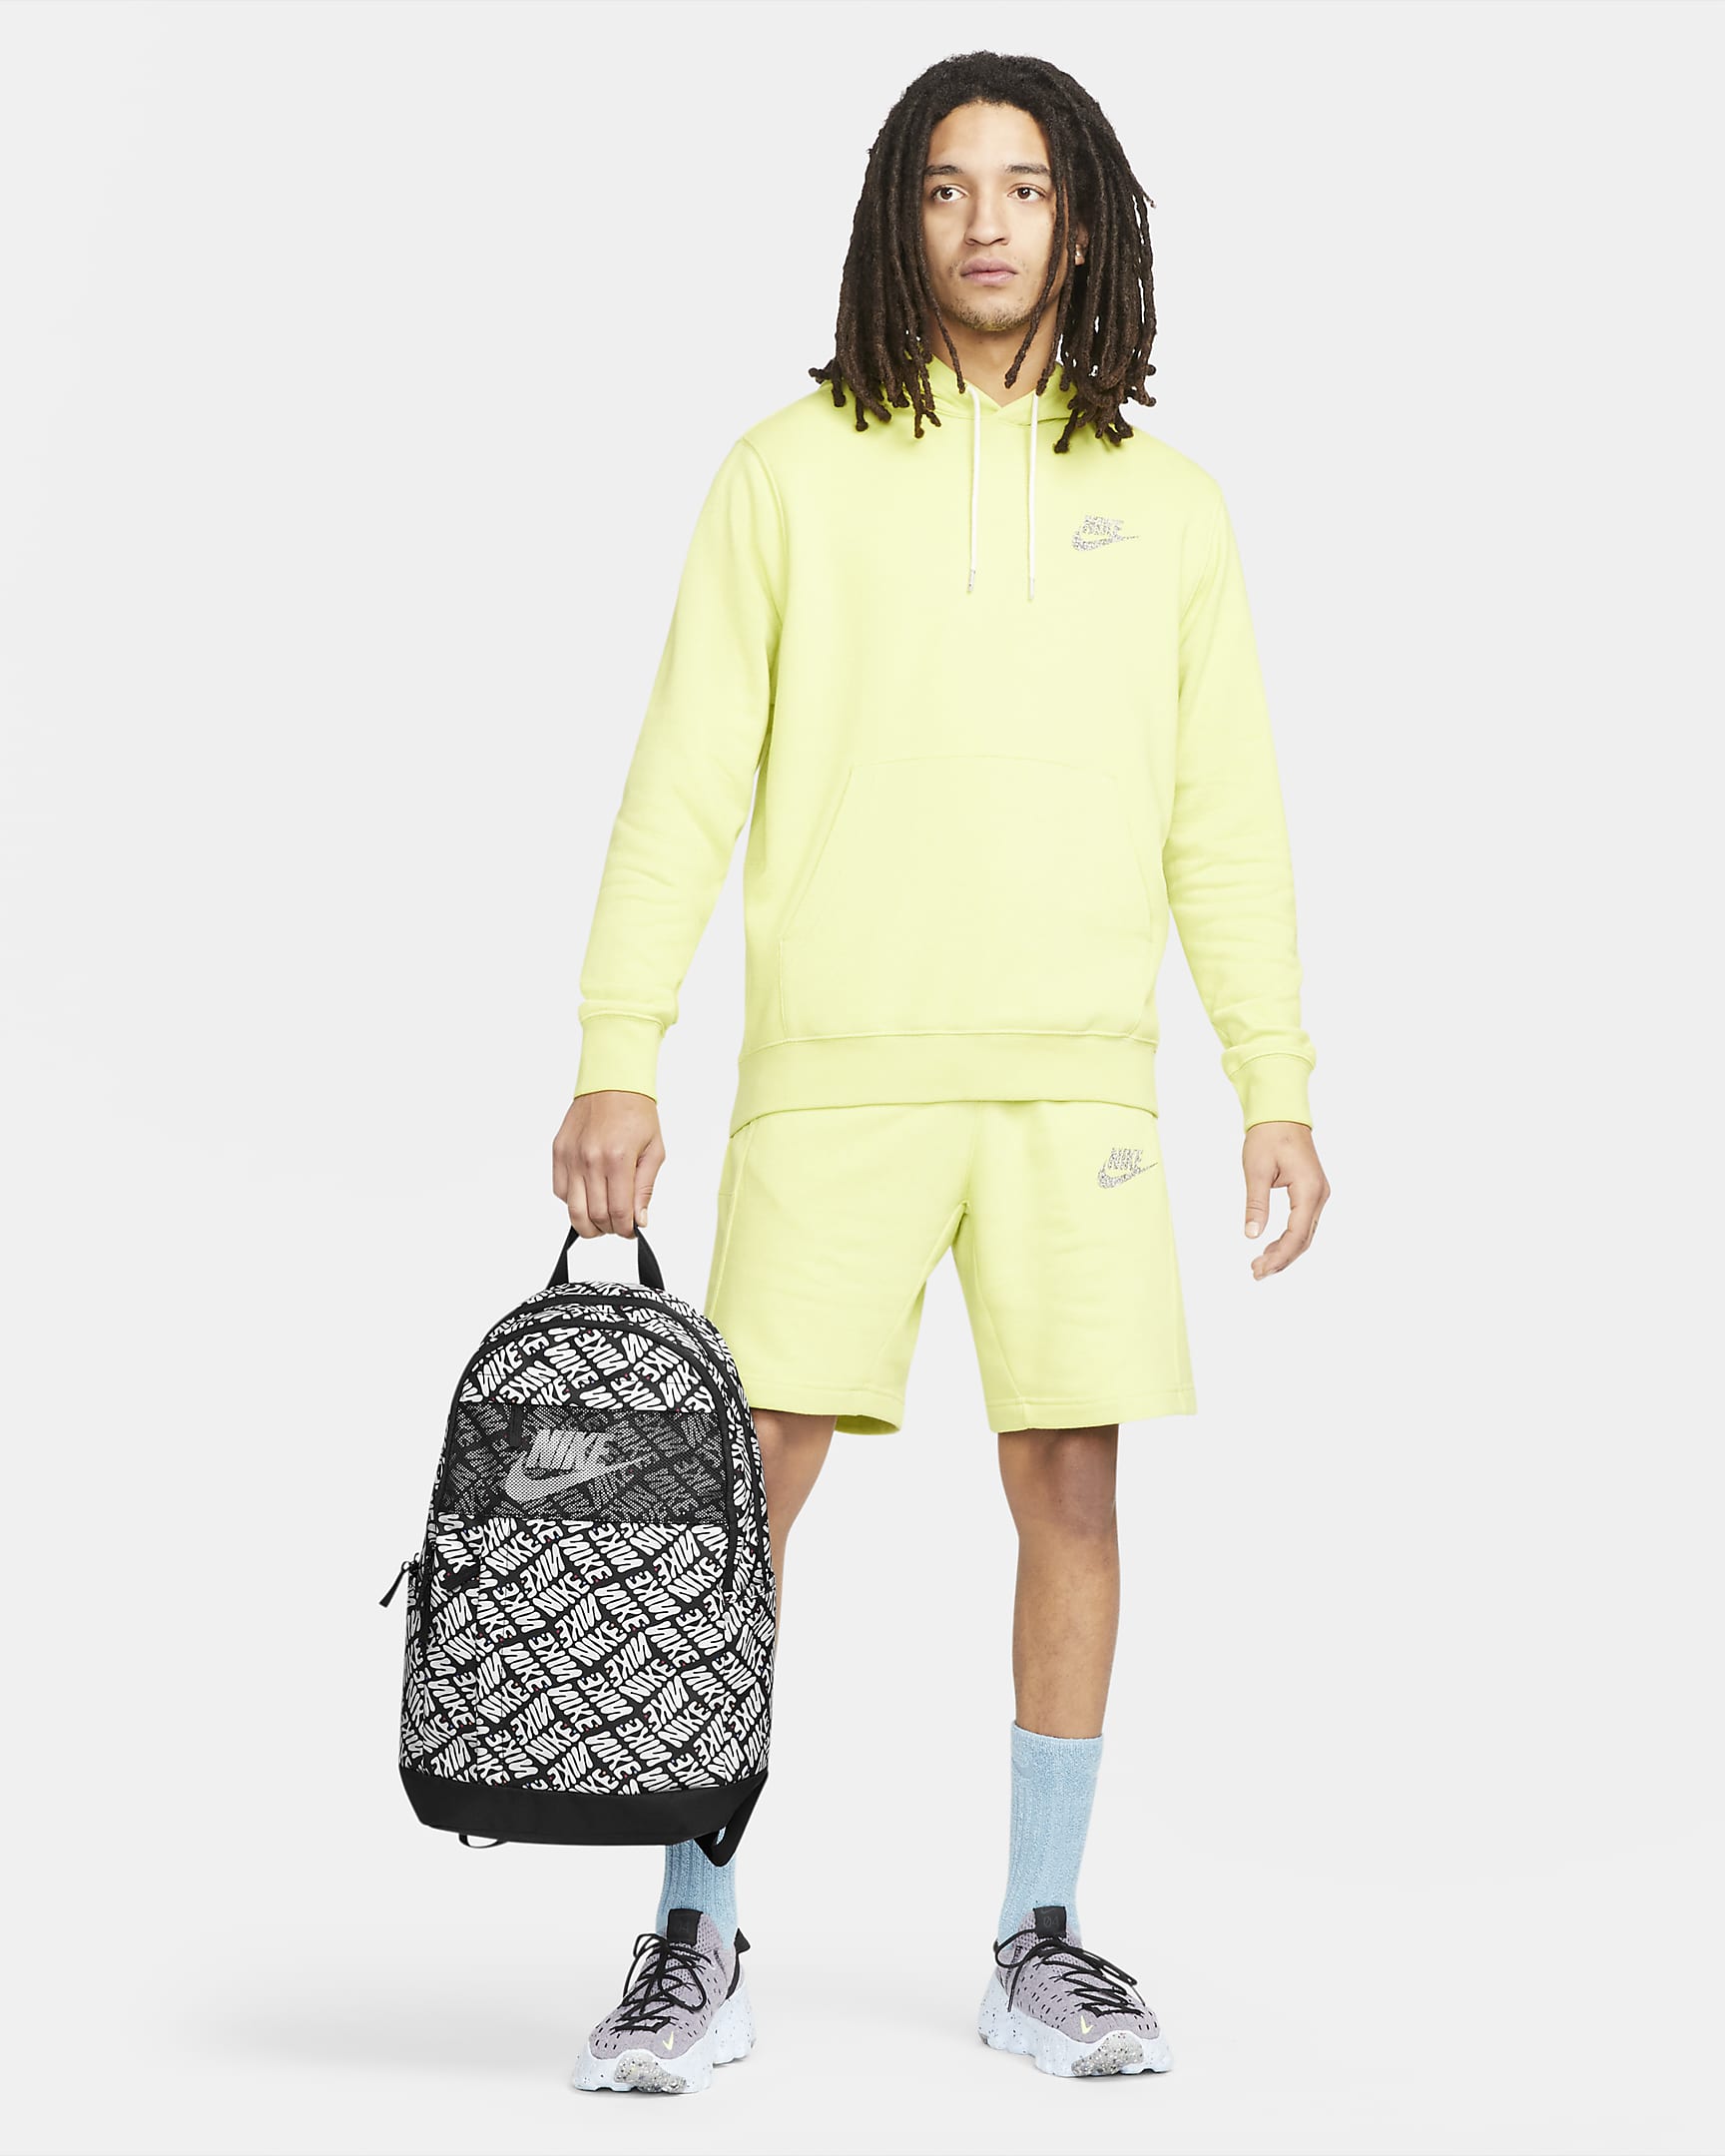 Nike Backpack (21L). Nike UK